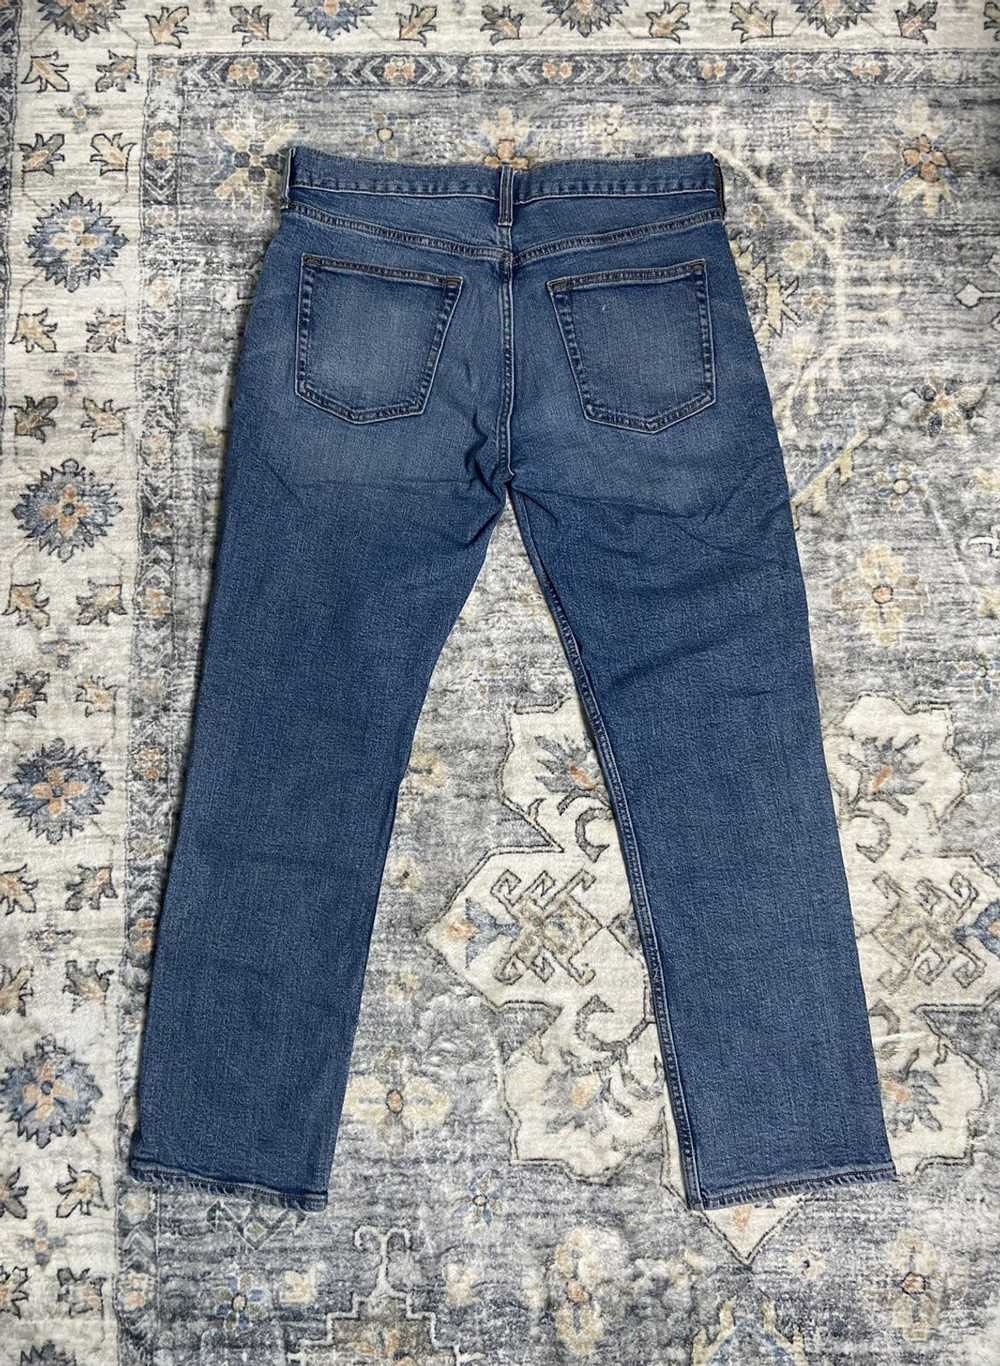 Jean × Old Navy × Vintage Vintage Denim Jeans - image 2